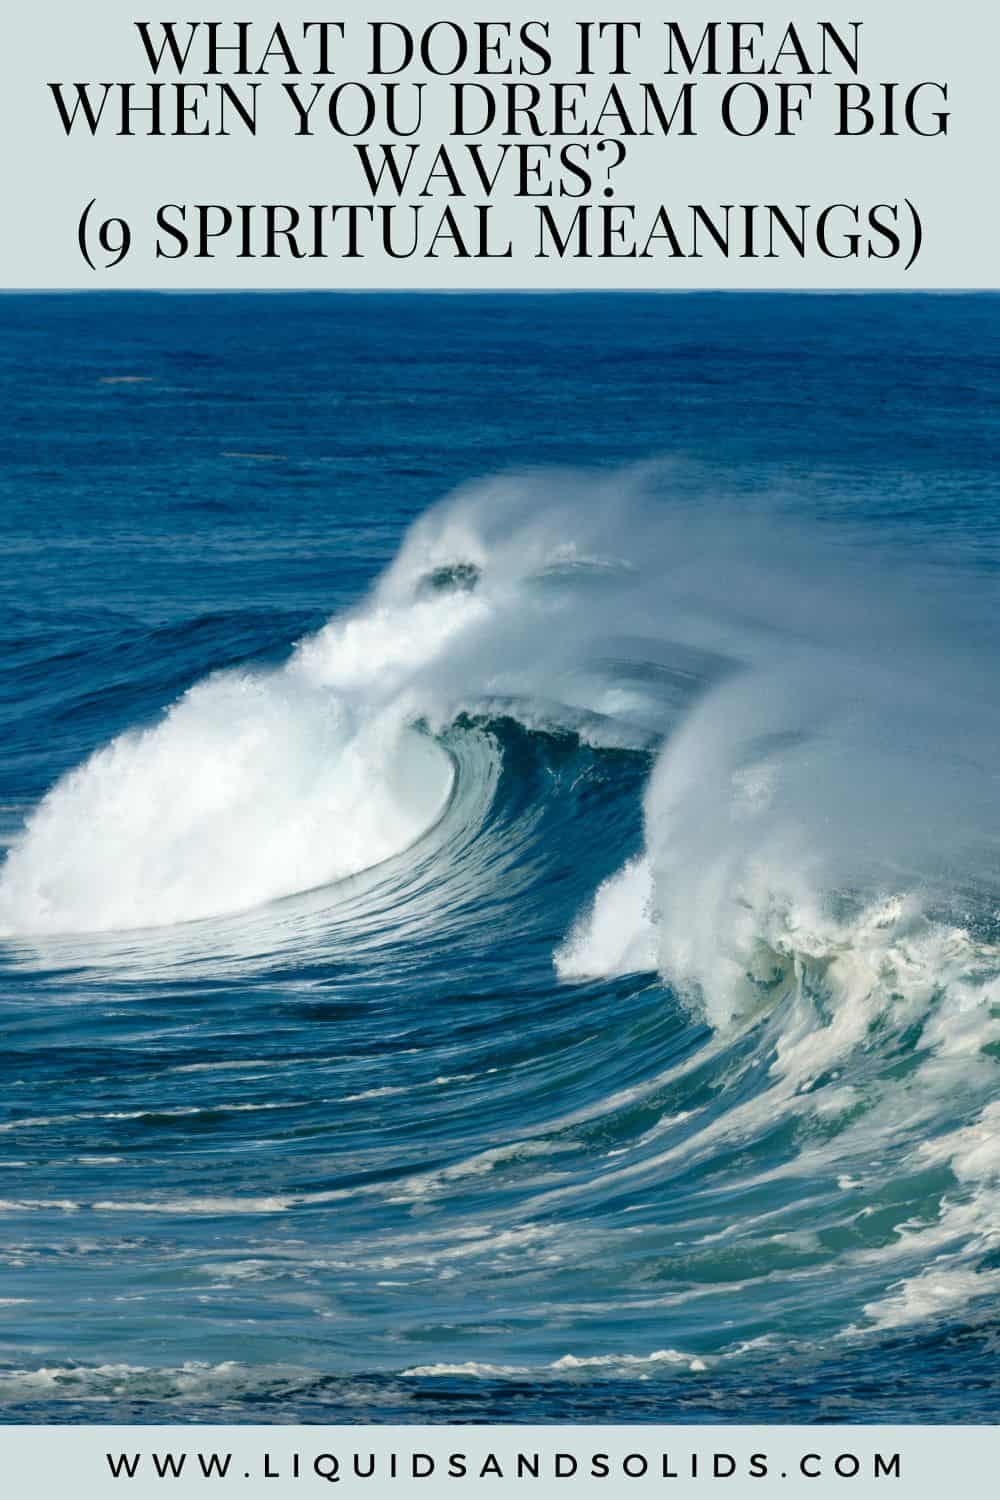  Mit jelent, ha nagy hullámokról álmodsz? (9 spirituális jelentés)